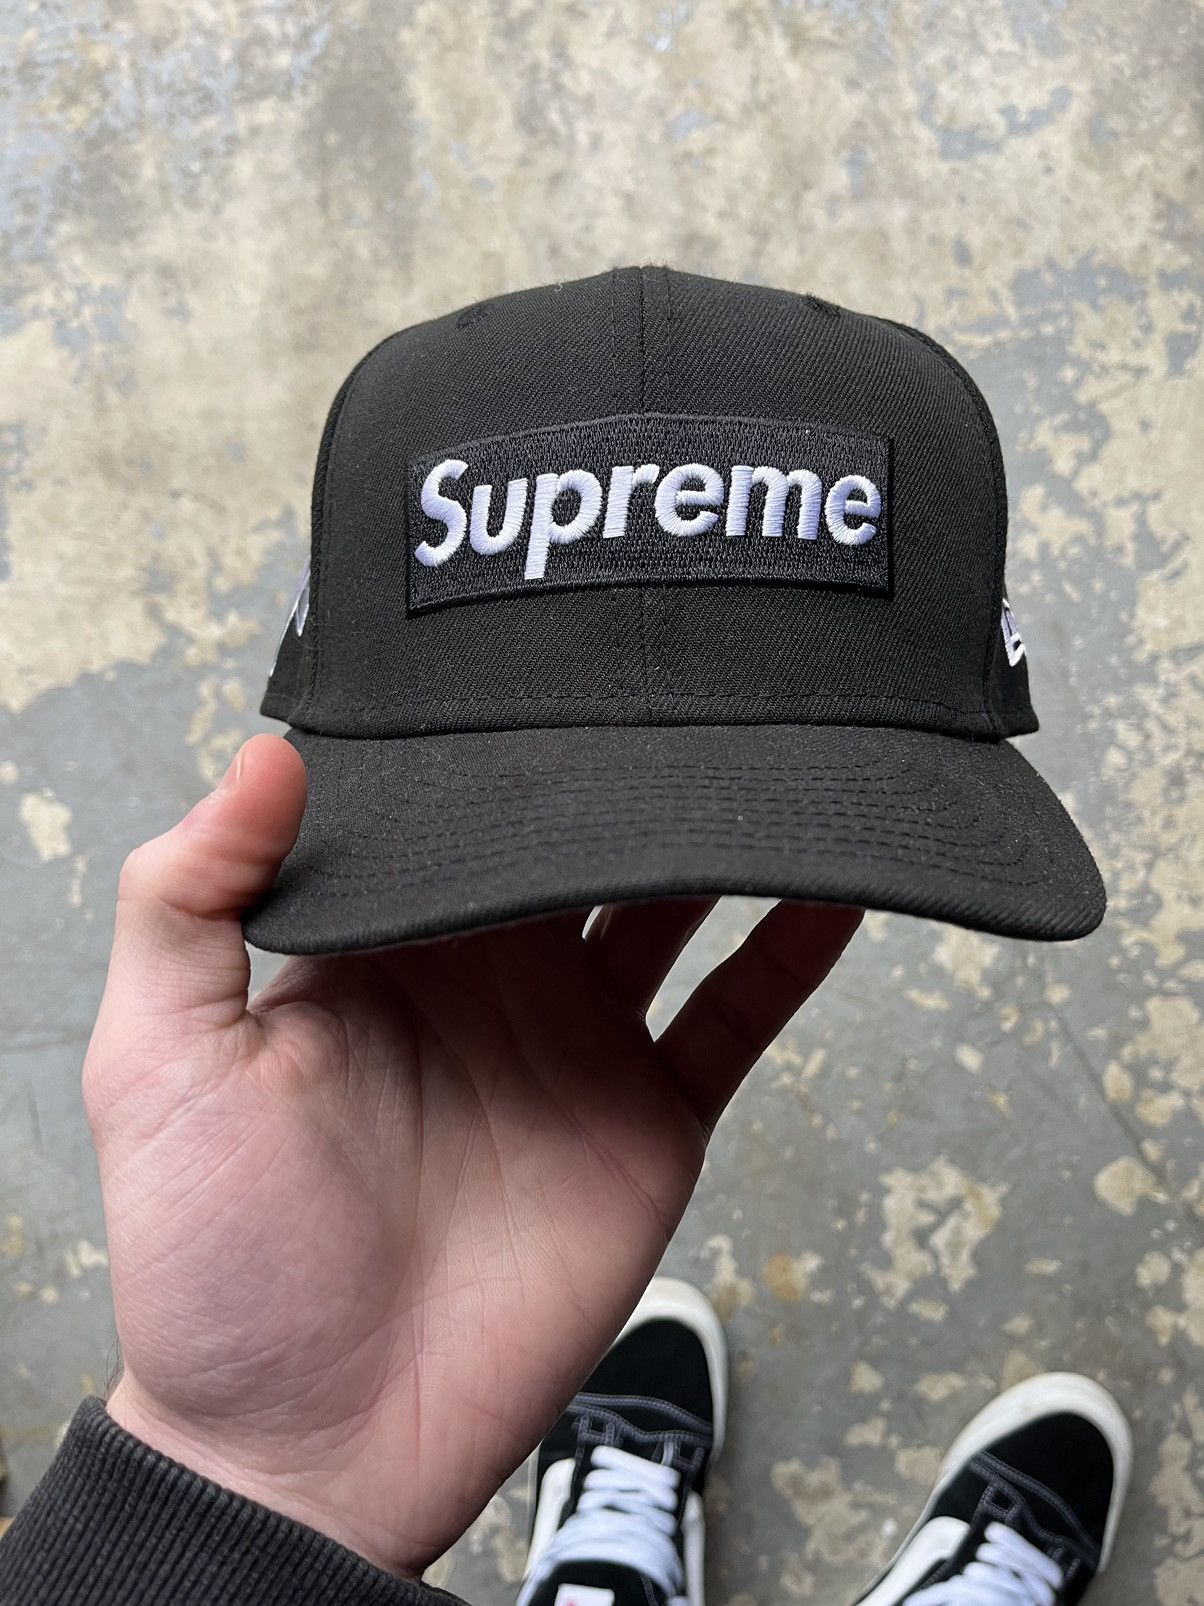 Supreme Supreme Money Box Logo New Era Hat 7 3/8 | Grailed